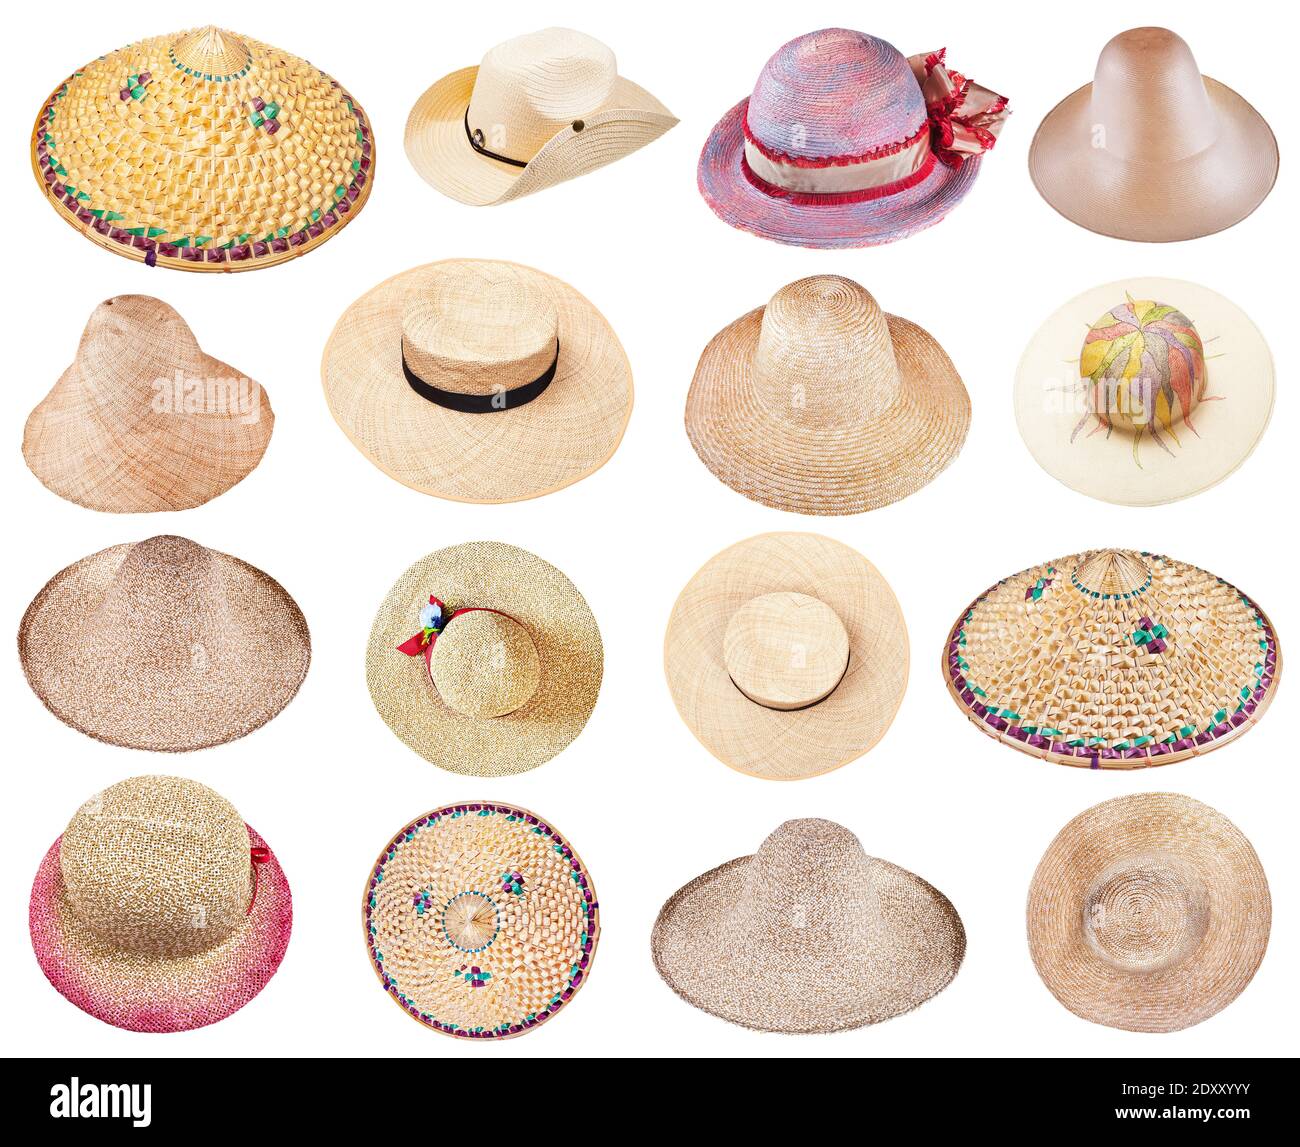 ensemble de différents chapeaux de paille d'été isolés sur fond blanc Banque D'Images